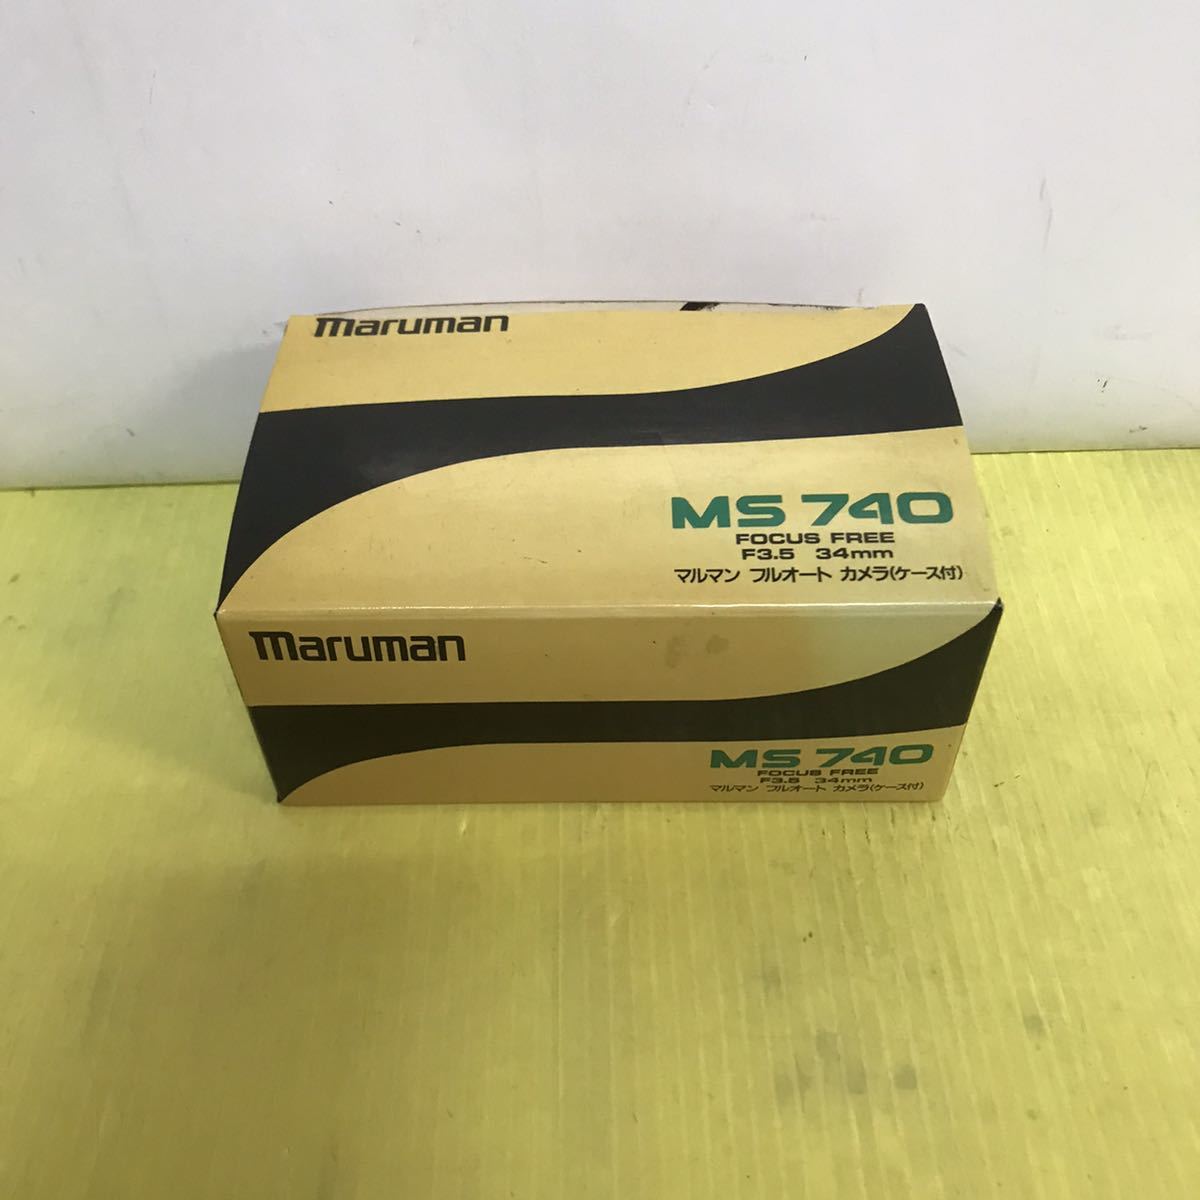 maruman フィルムカメラ MS740 箱説明書付き マルマン 昭和レトロ アンティーク_画像1